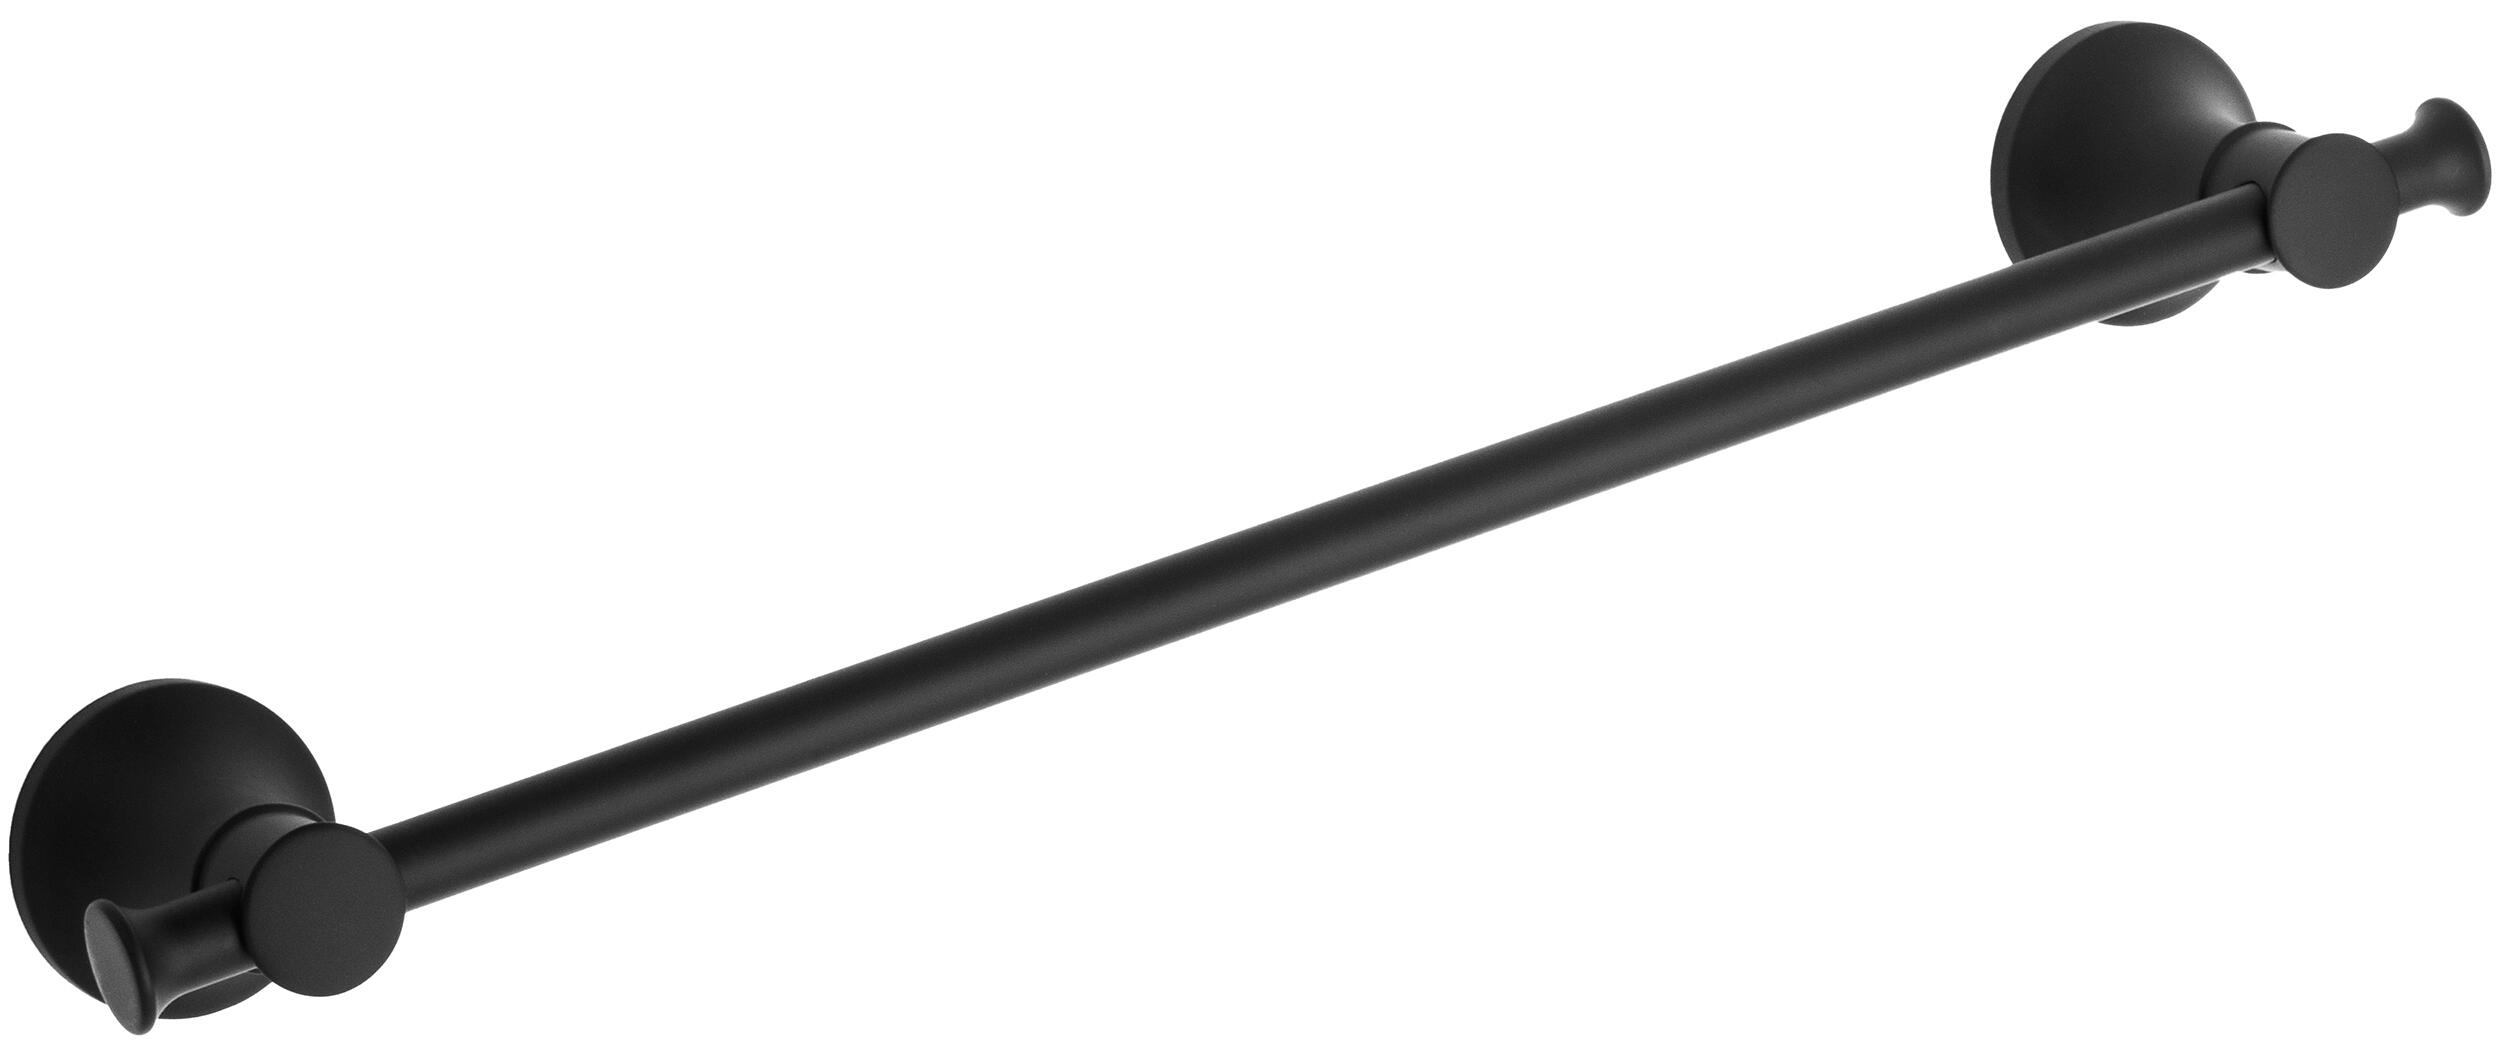 Toallero cardiff negro 45x5.5 cm